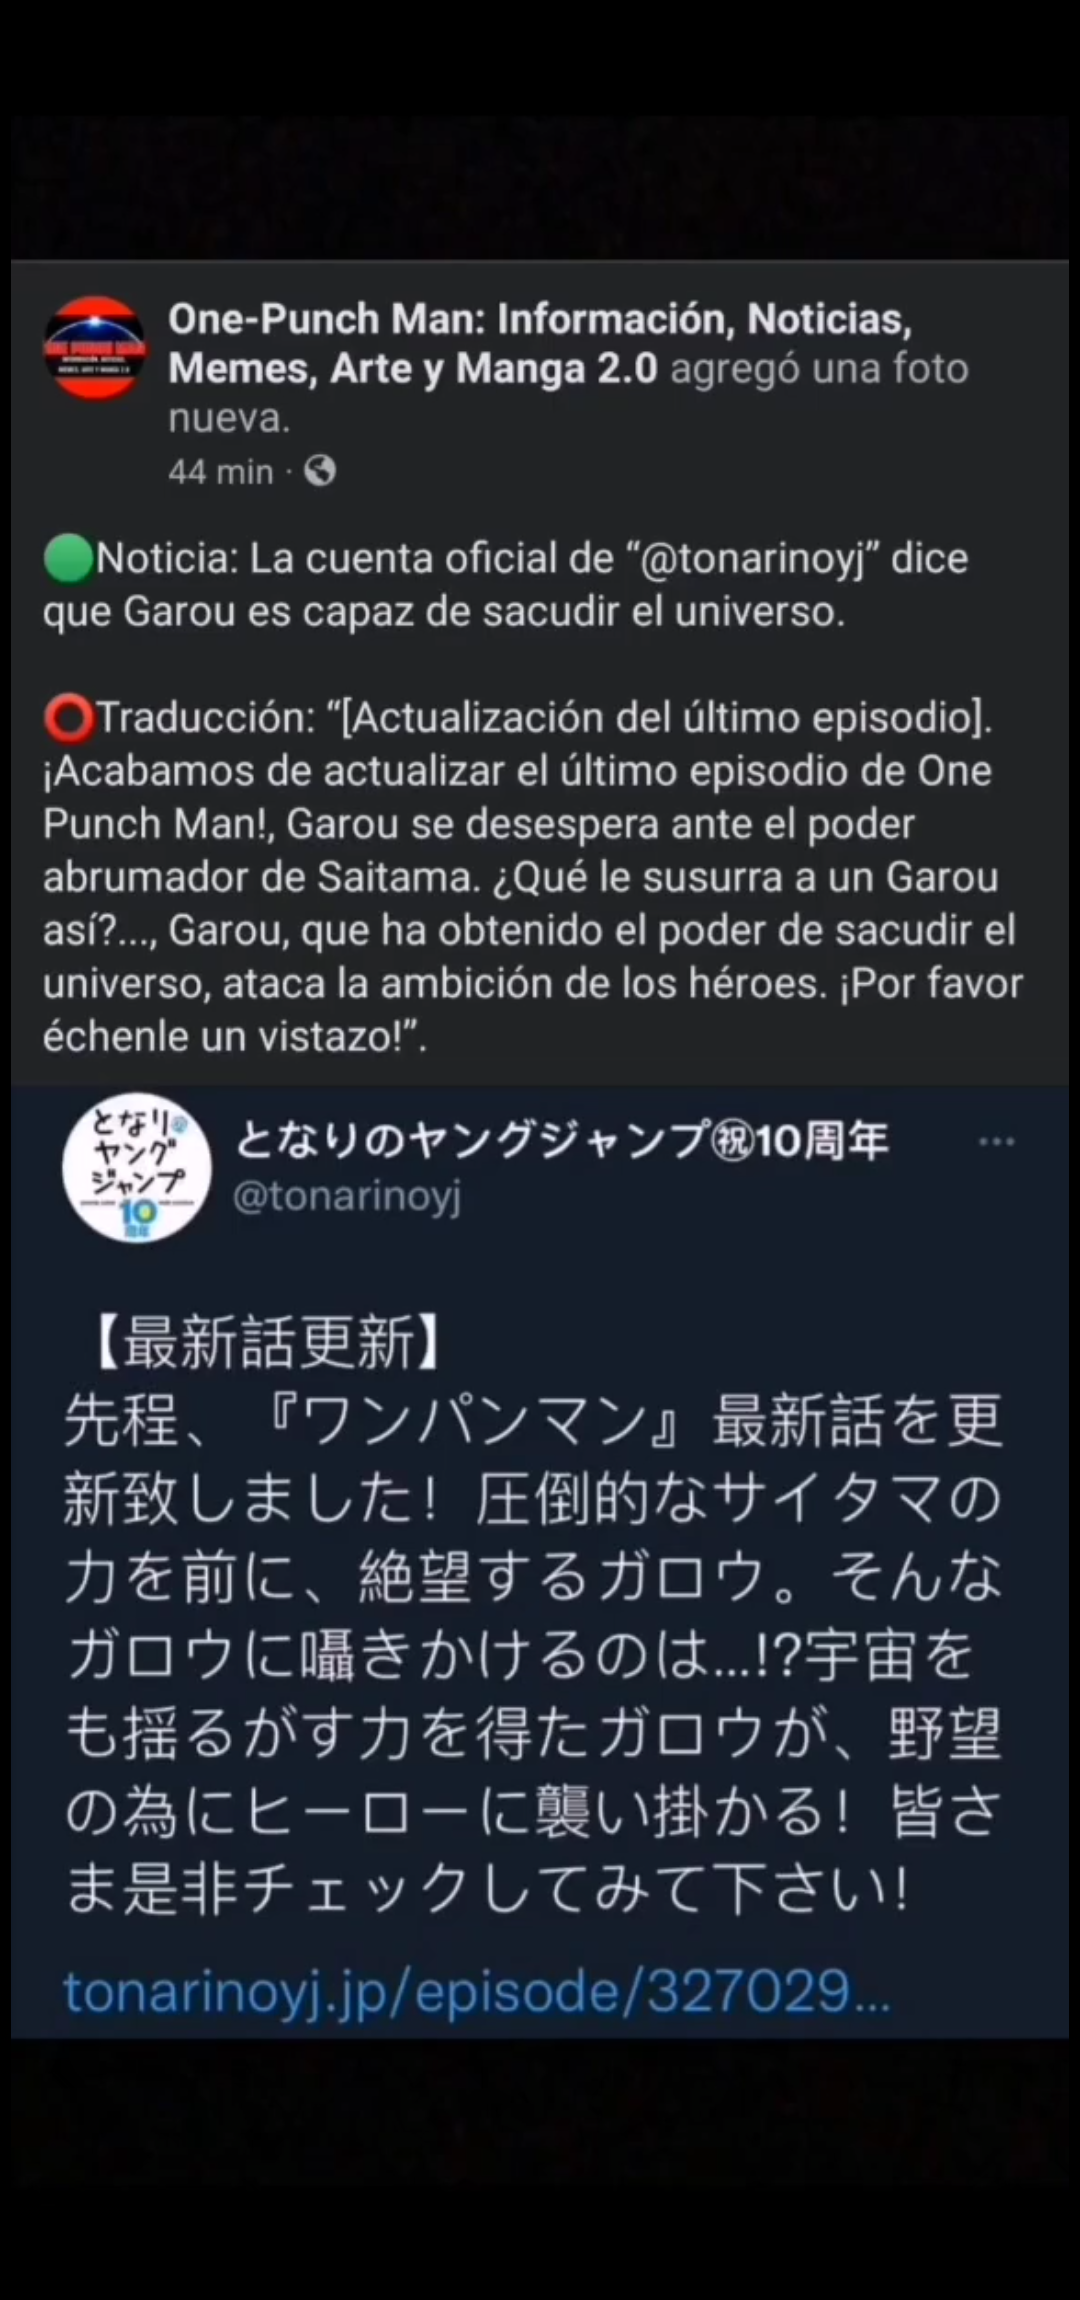 One-Punch Man: Información, Noticias, Memes, Arte y Manga 2.0